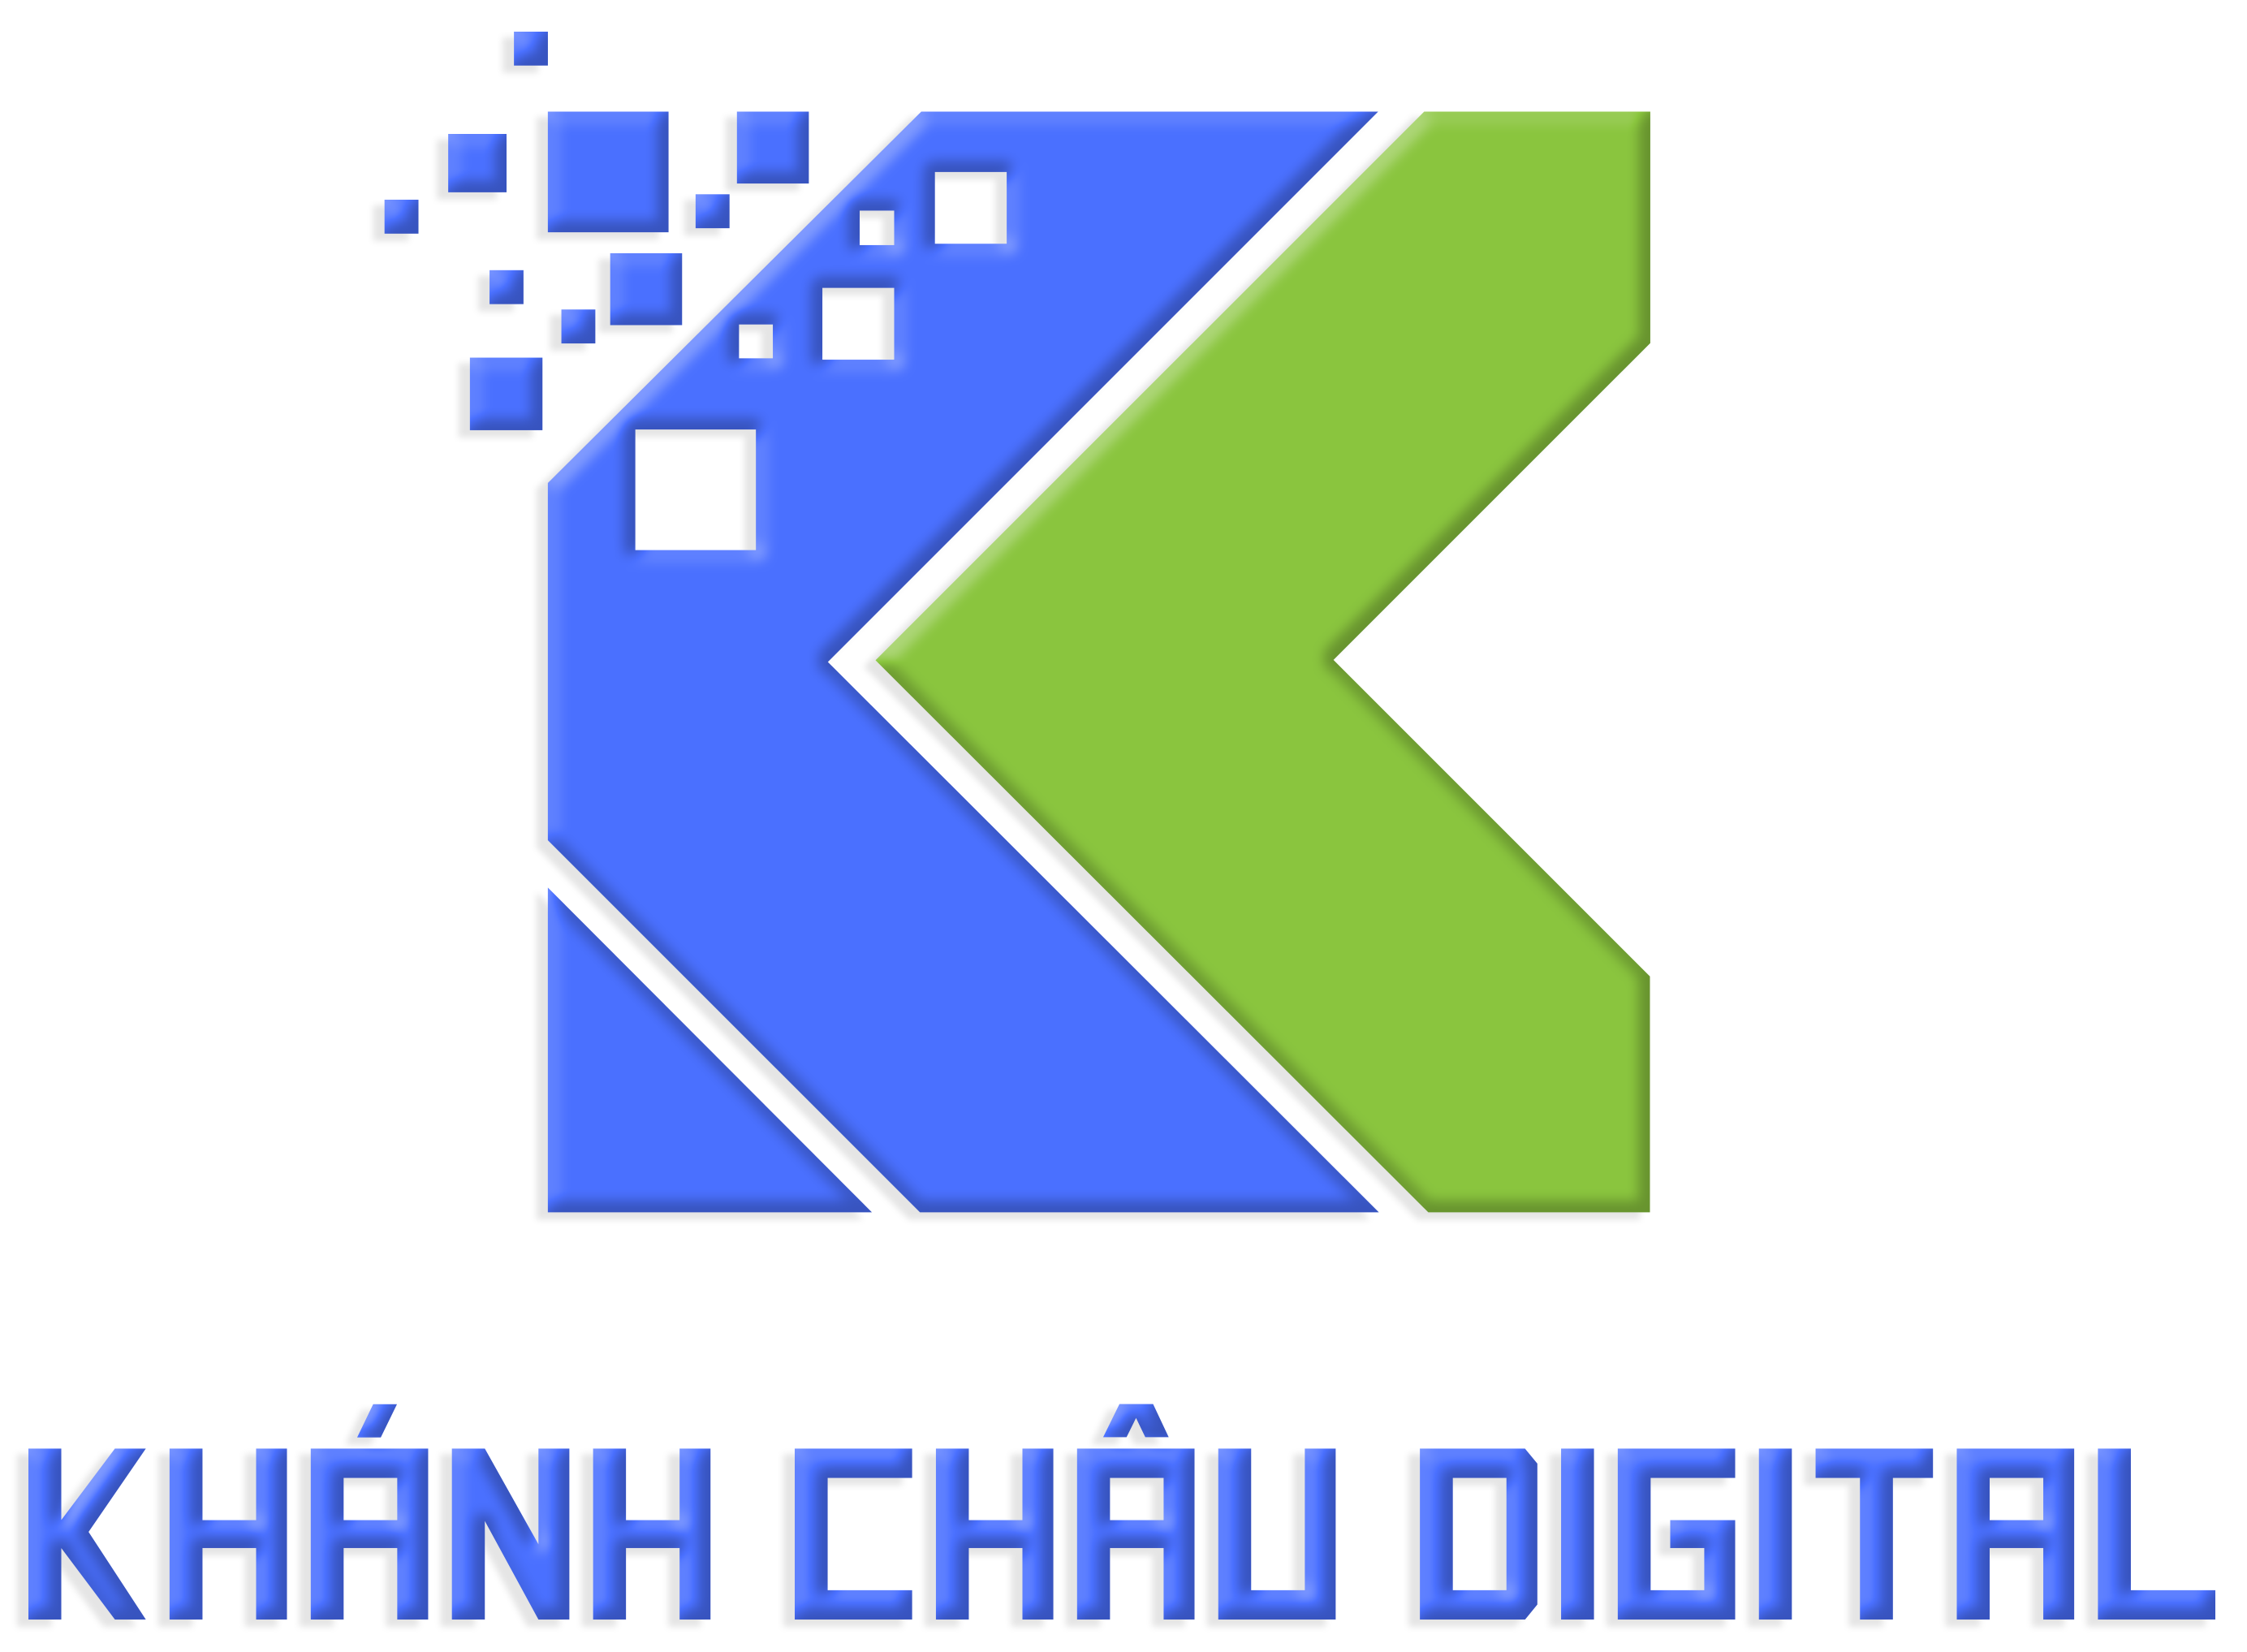 khanhchaudigital